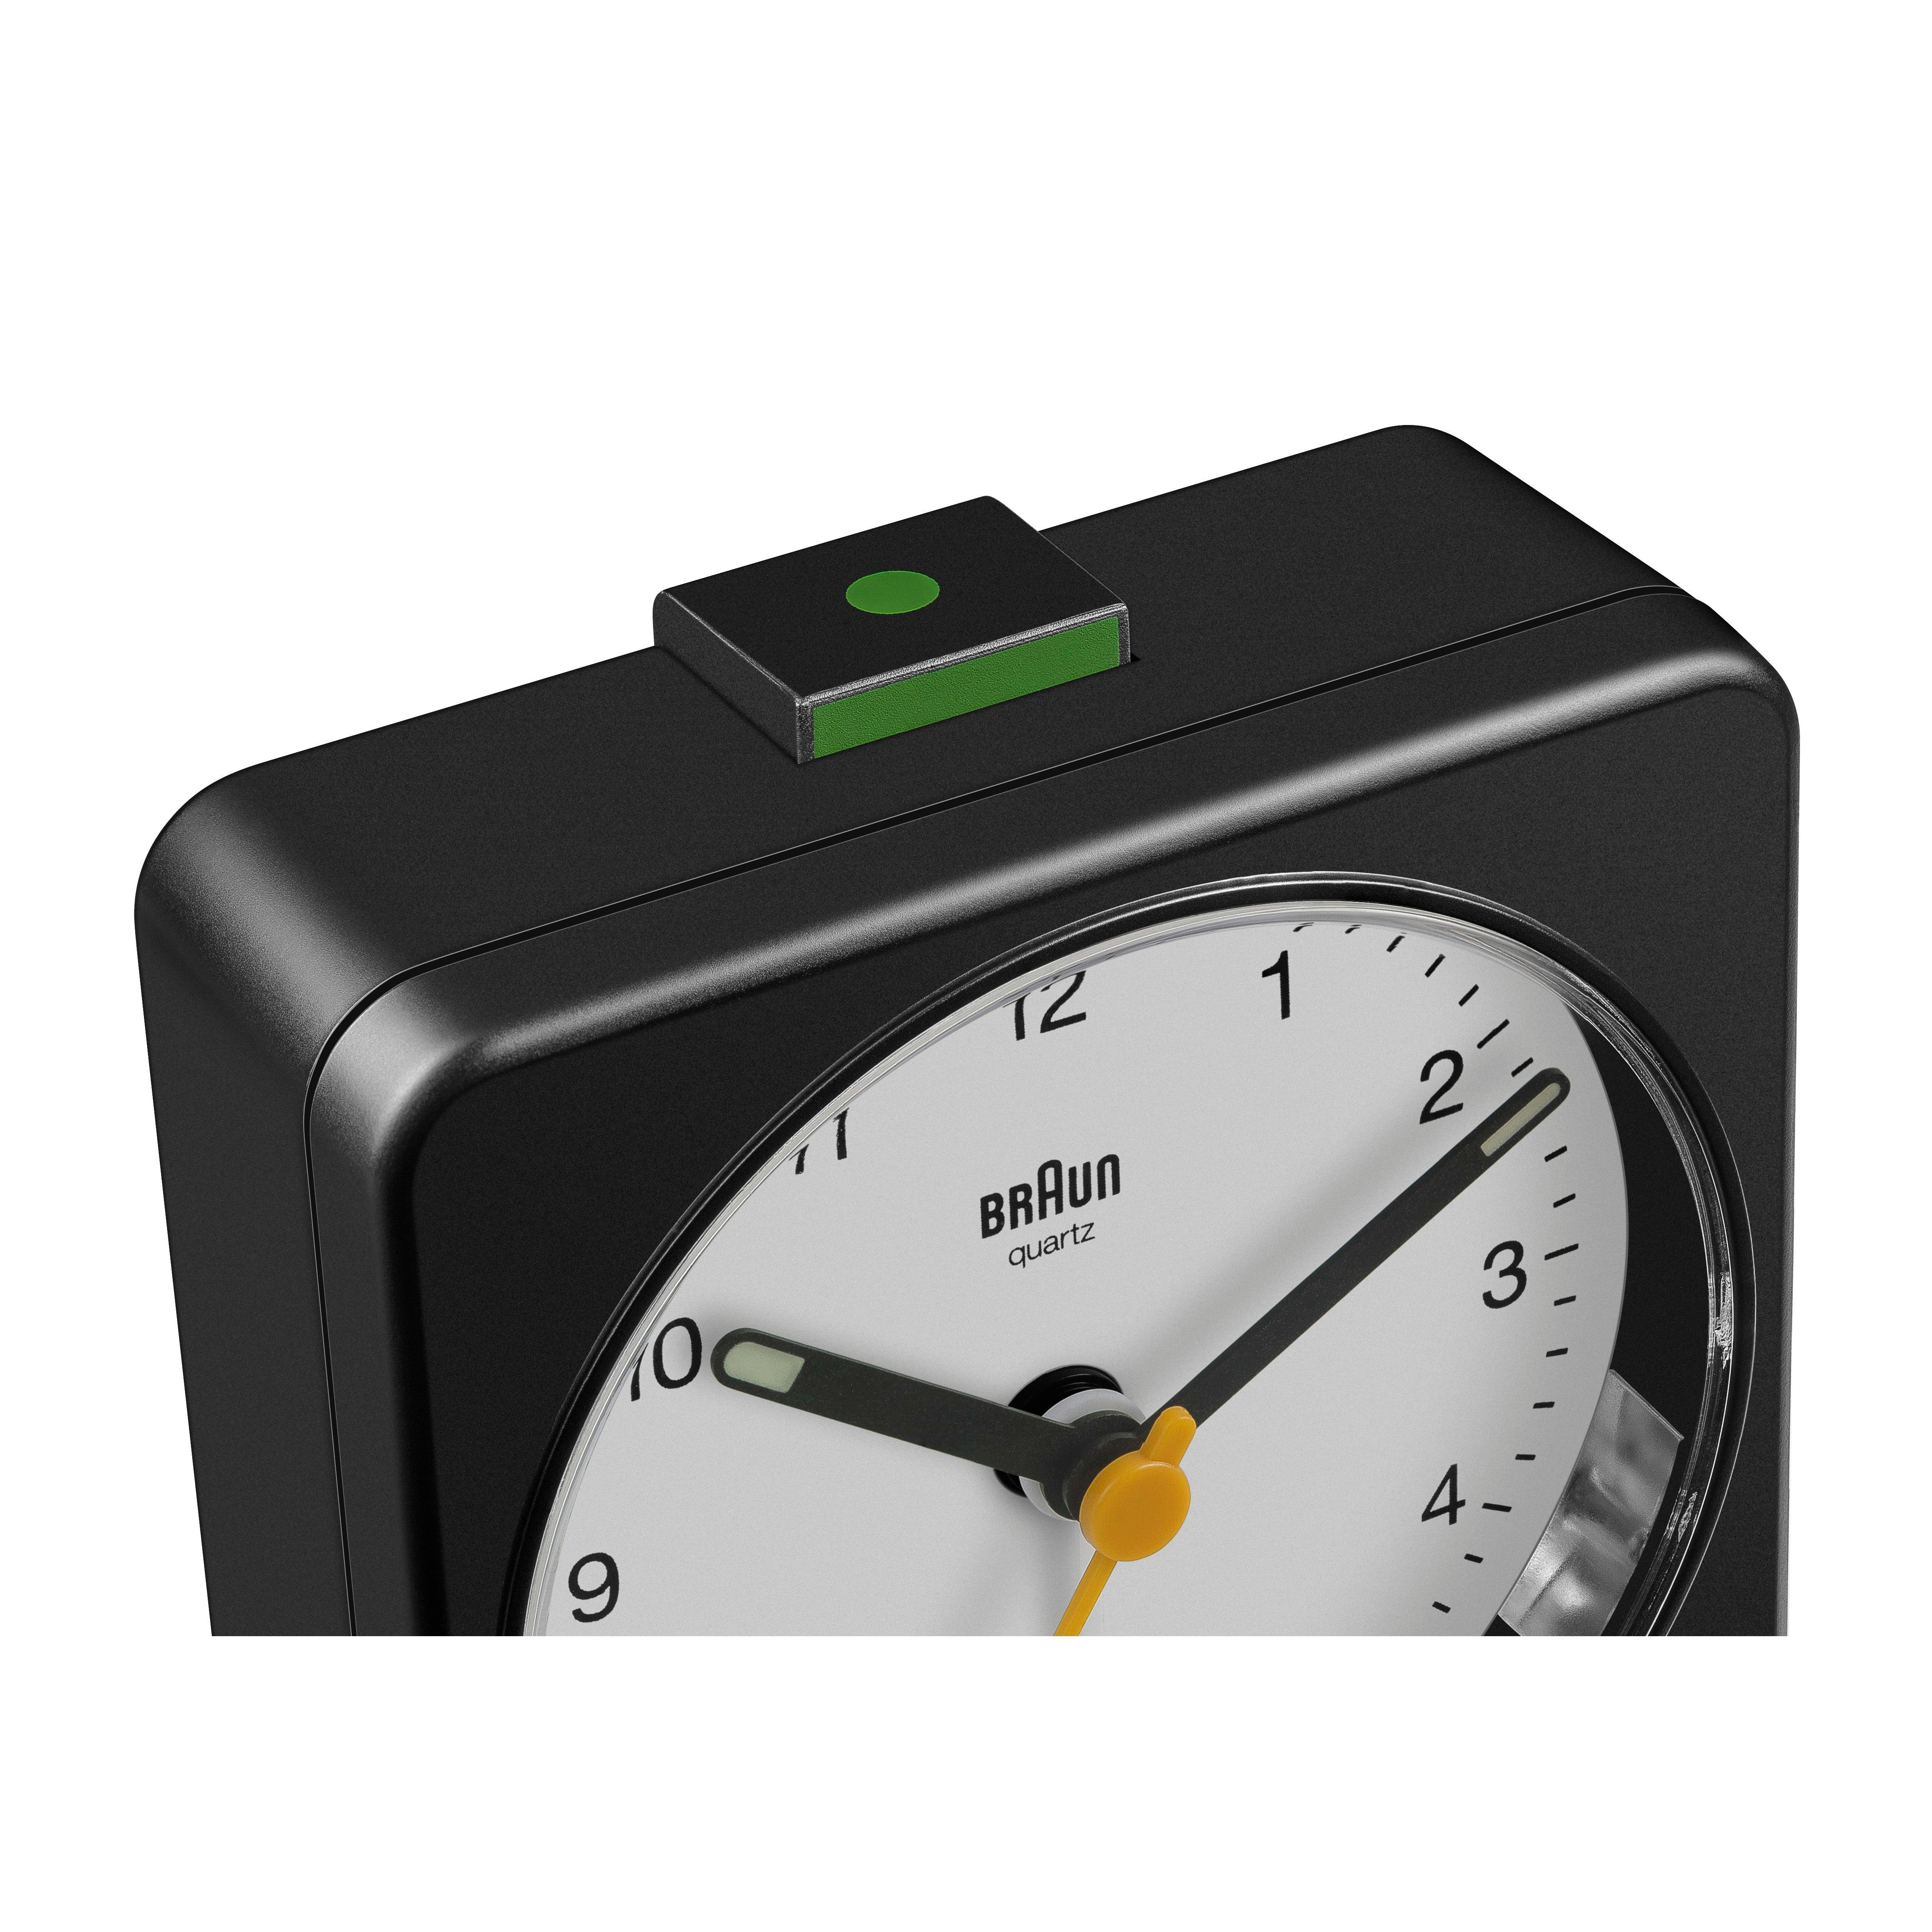 Afwijken Gemeenten Verslaving Braun Large Classic Travel Alarm Clock - Black/White | Desk Accessories |  Huckberry